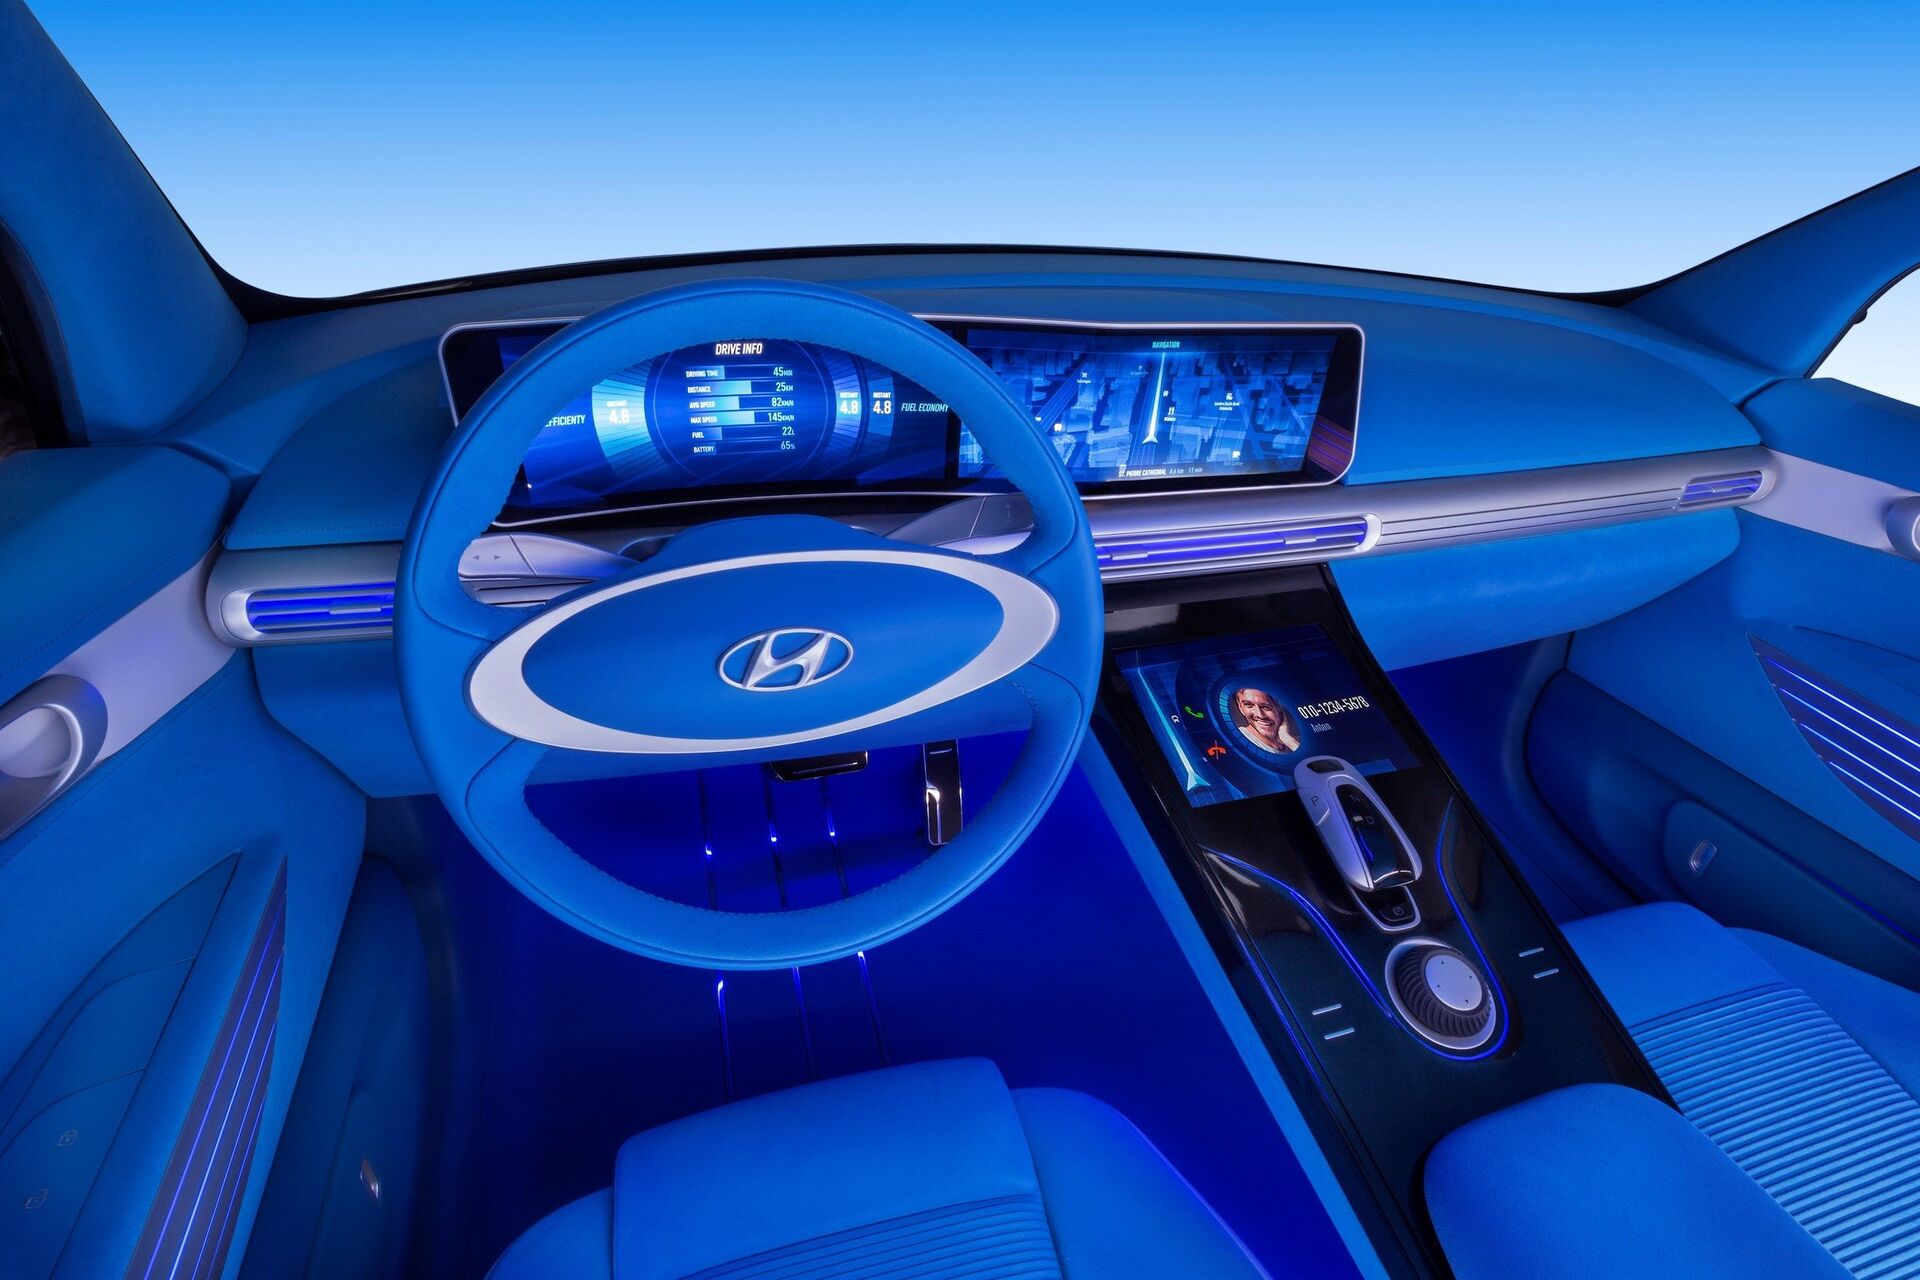 Hyundai FE Concept